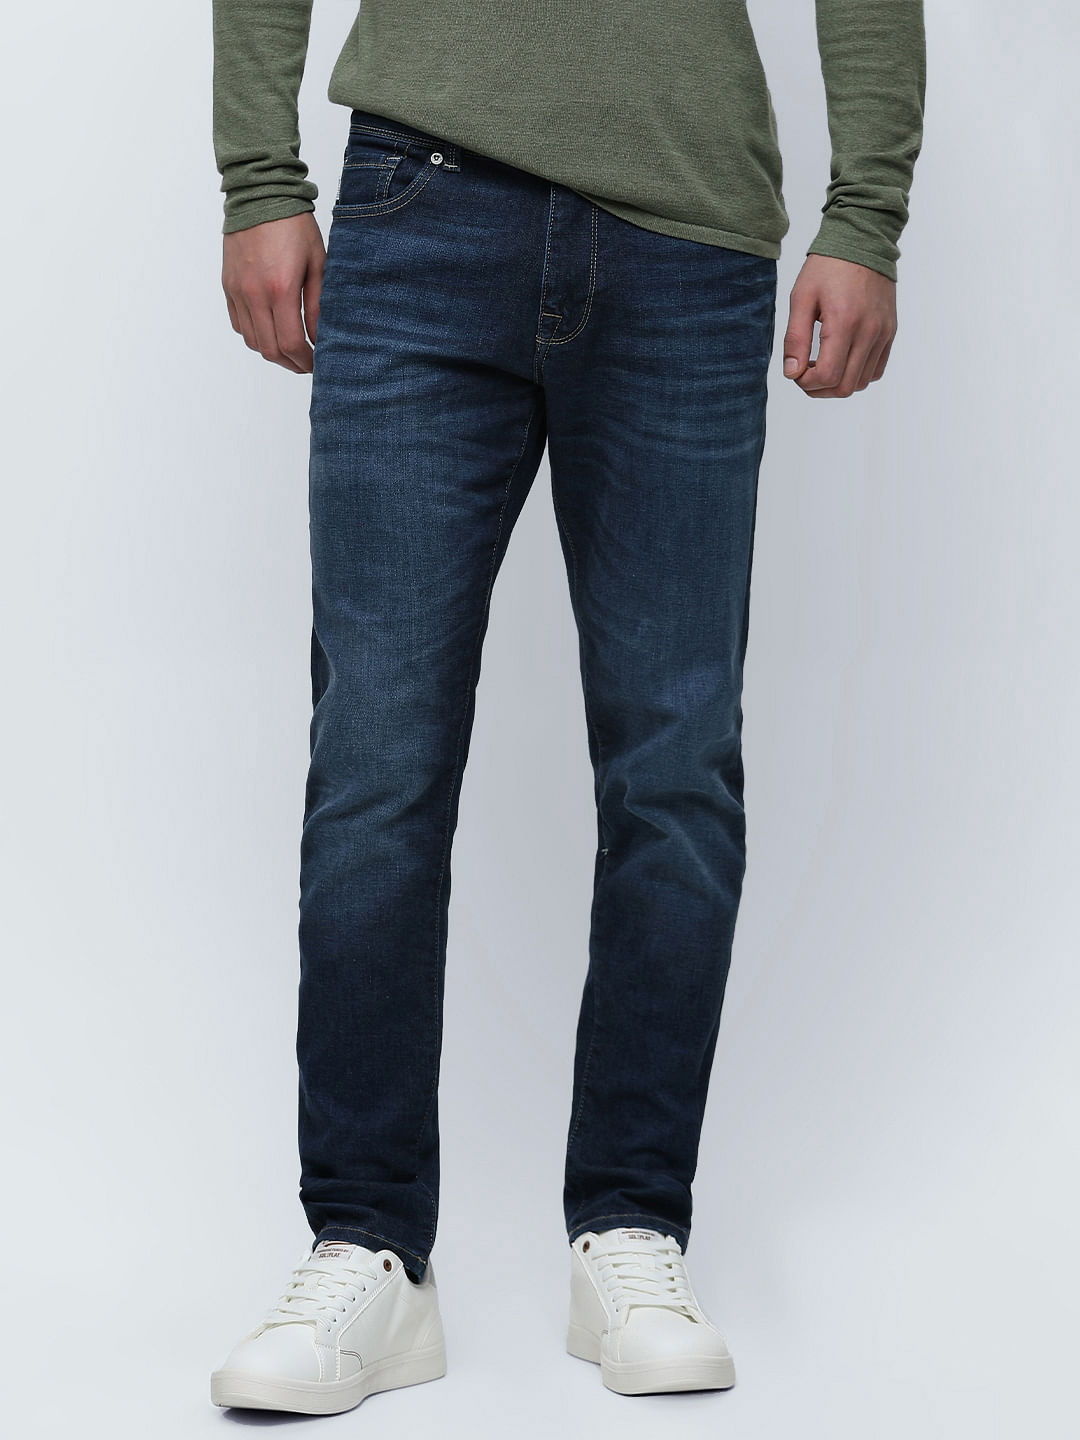 Buy Blue Solid Slim Fit Jeans for Men Online at Killer Jeans | 510166